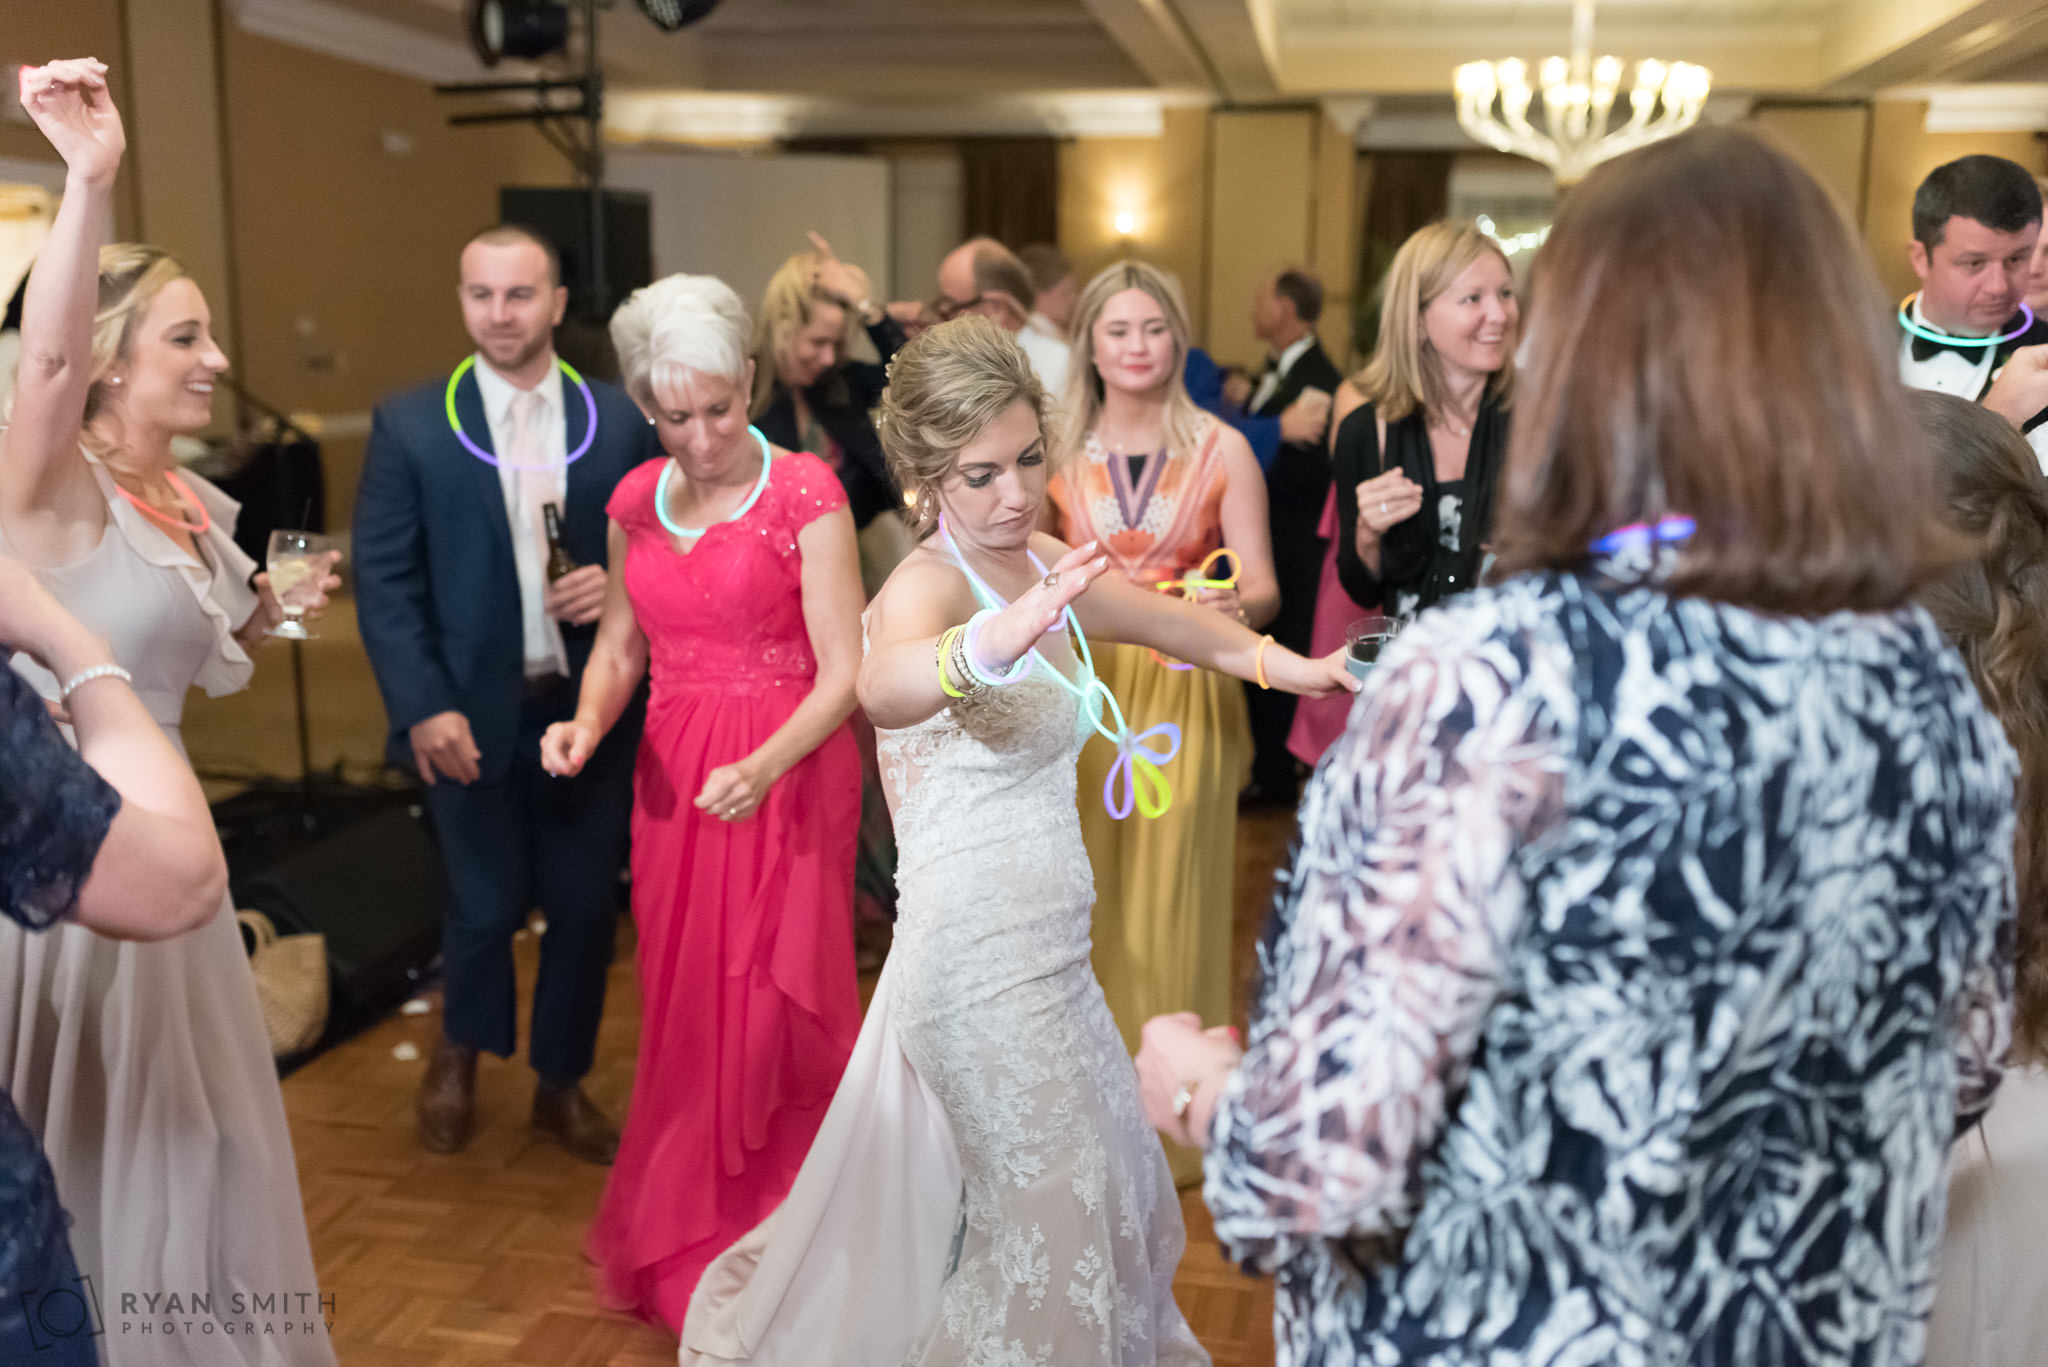 Bride having fun dancing